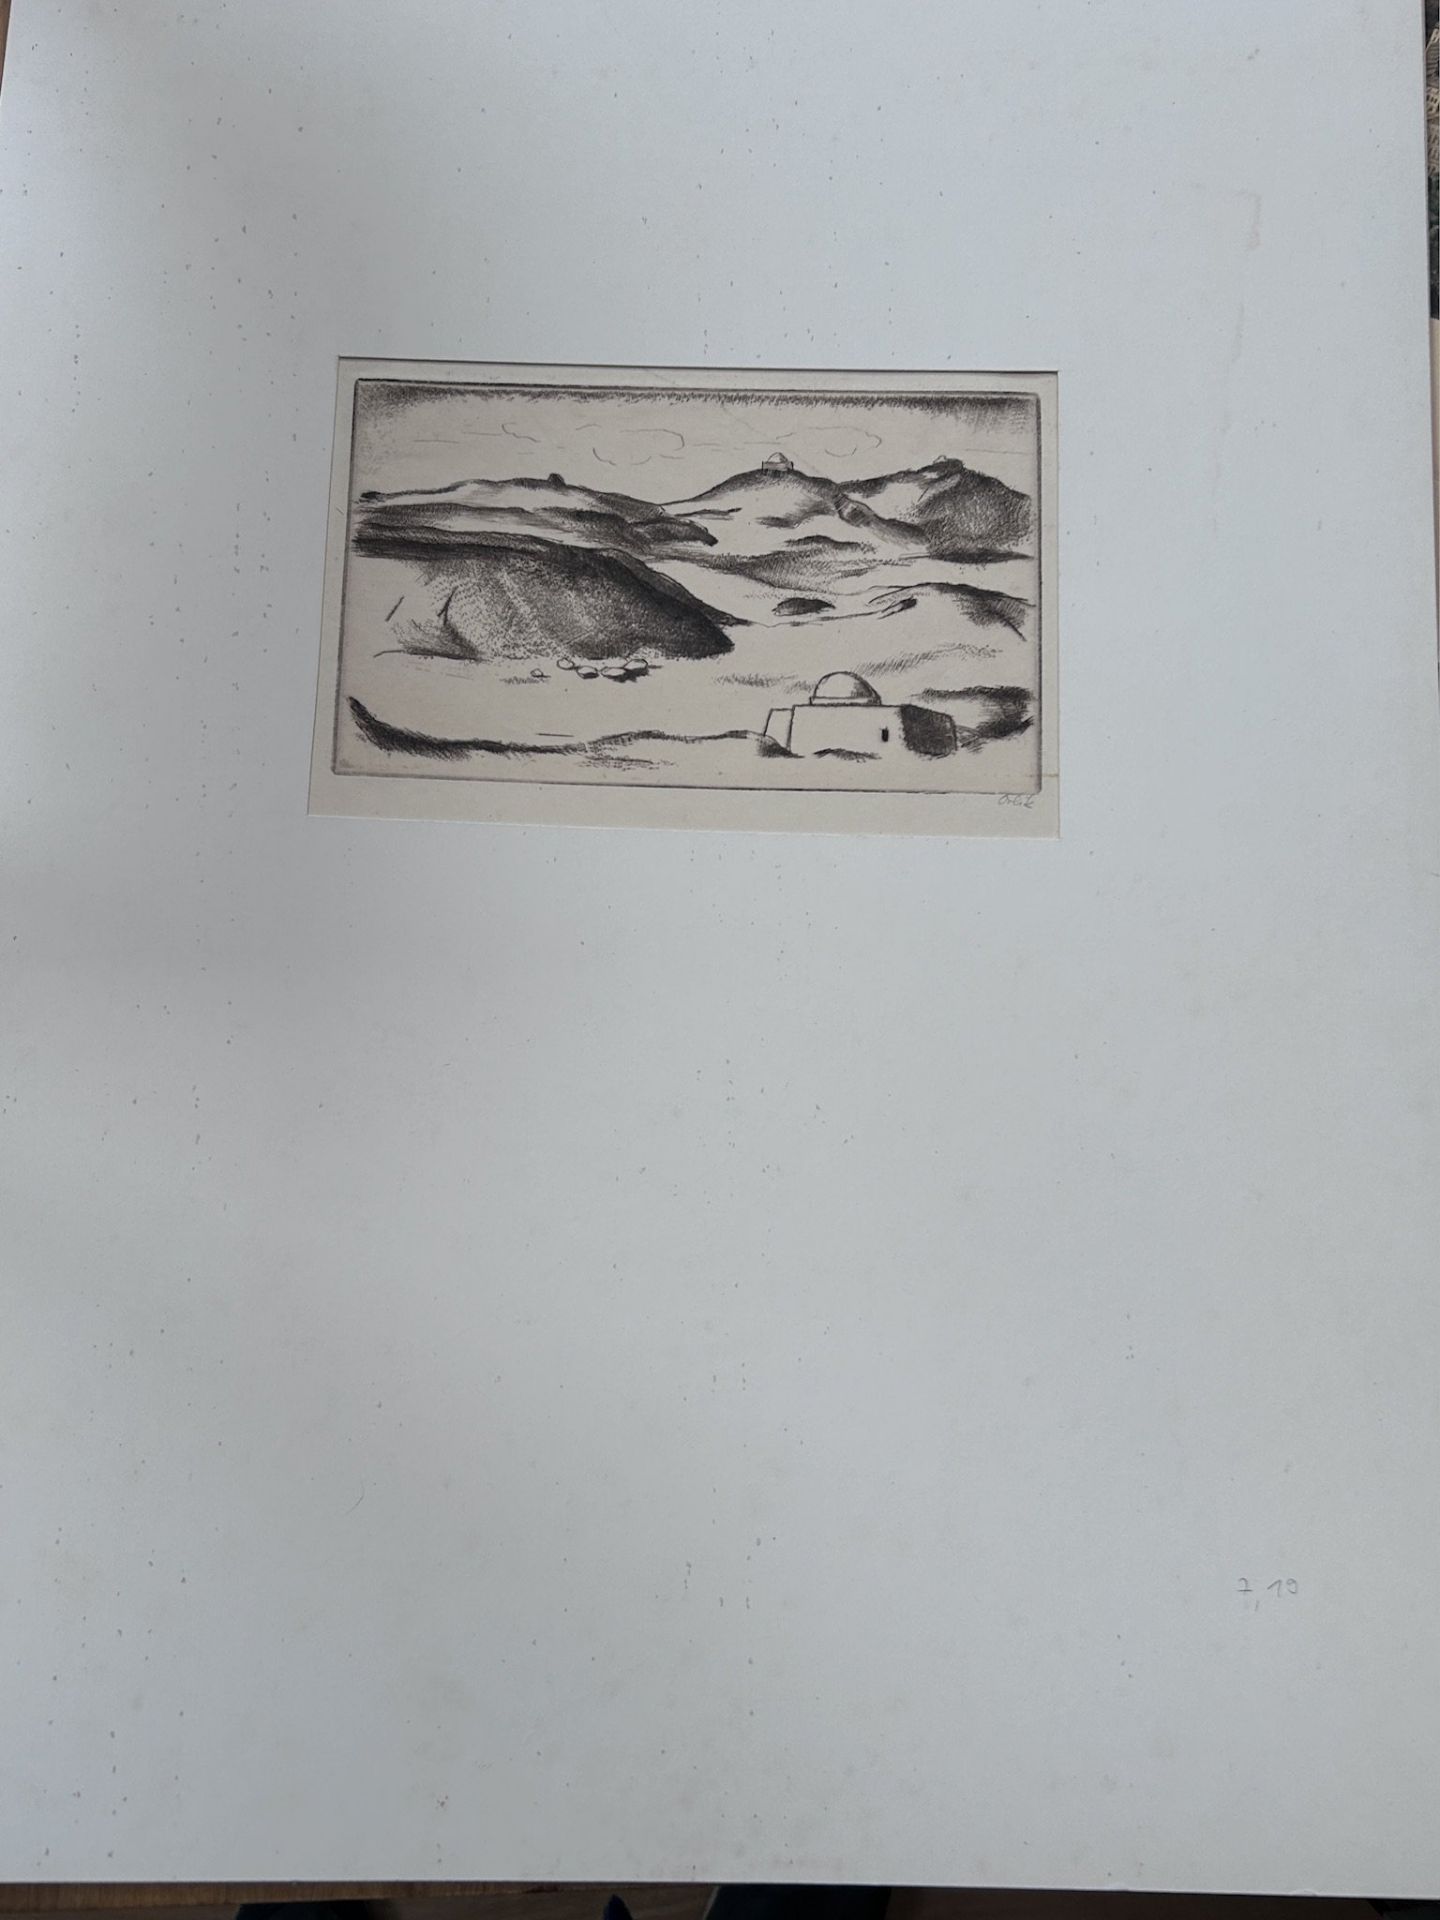 Emil ORLIK (1870-1932) , Blatt aus der Serie "Reise nach Ägypten" Aquatinta Radierung, signiert, MG - Bild 2 aus 3